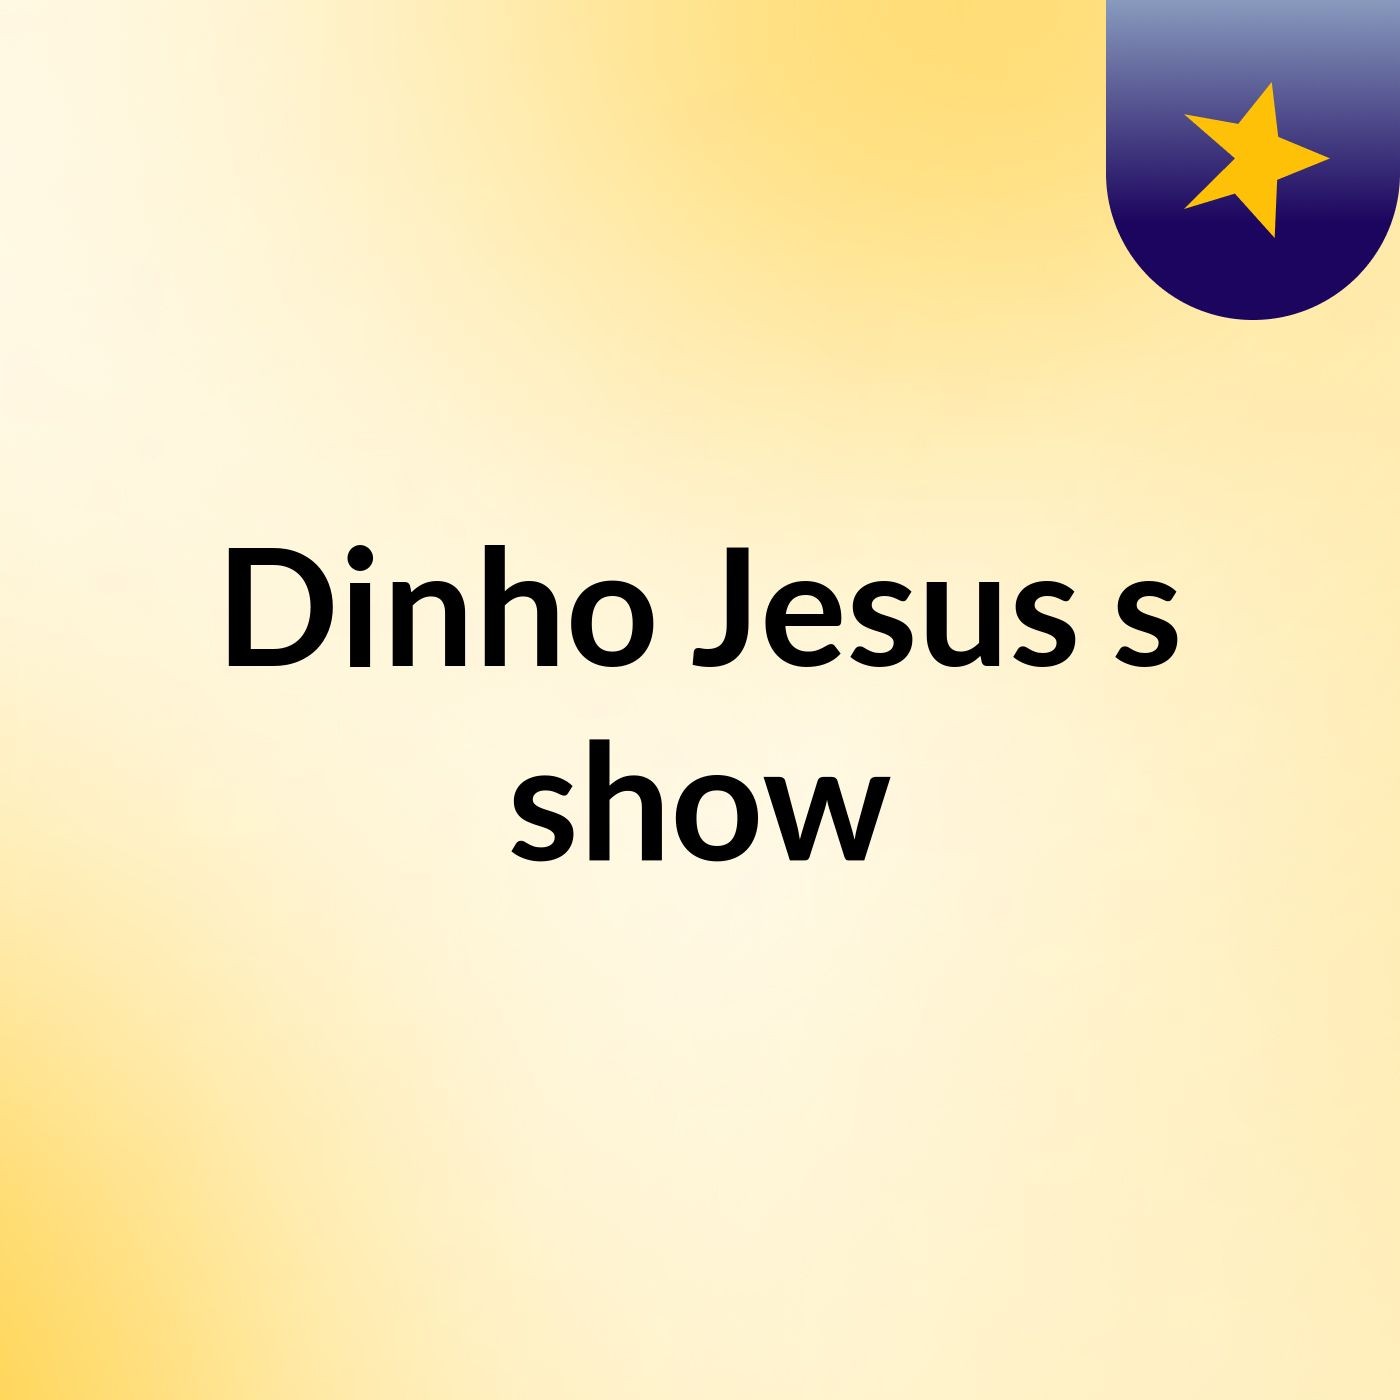 Dinho Jesus's show